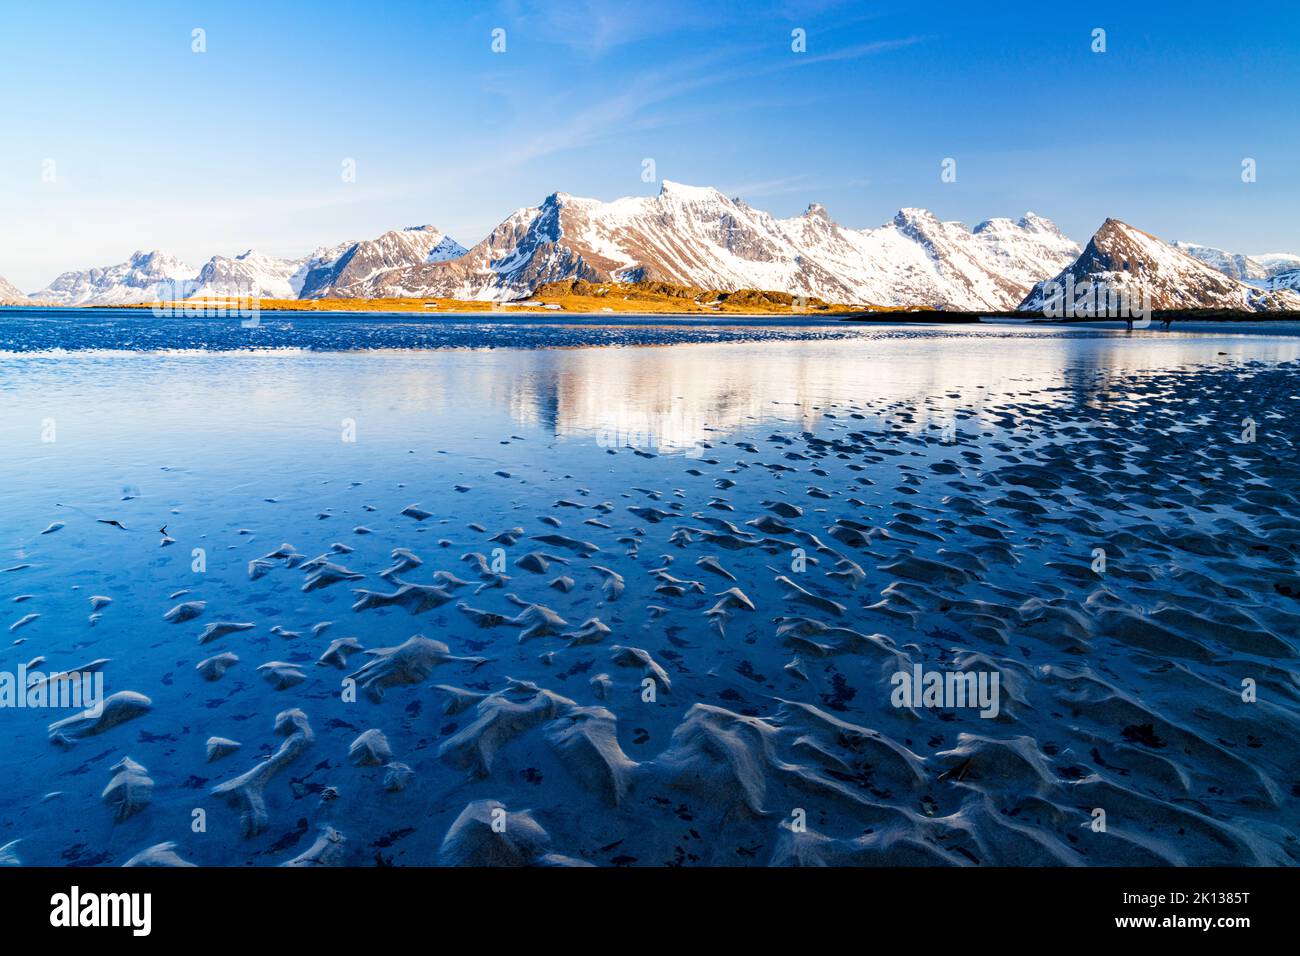 Onde del mare freddo che si infrangono sulla spiaggia con montagne innevate sullo sfondo, Fredvang, Nordland, Isole Lofoten, Norvegia, Europa Foto Stock